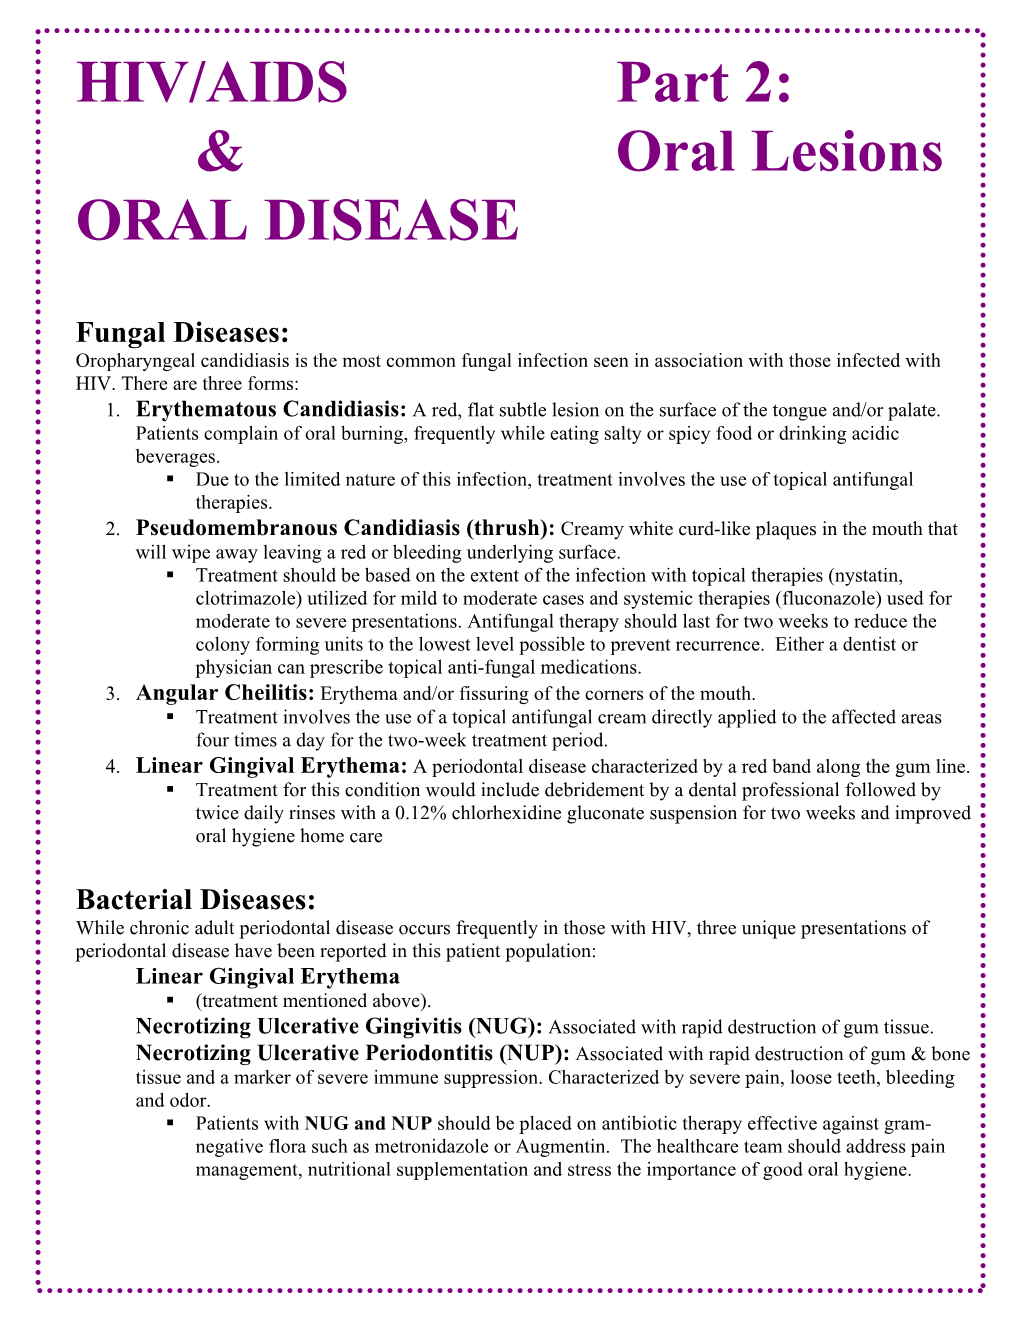 Oral Lesions ORAL DISEASE